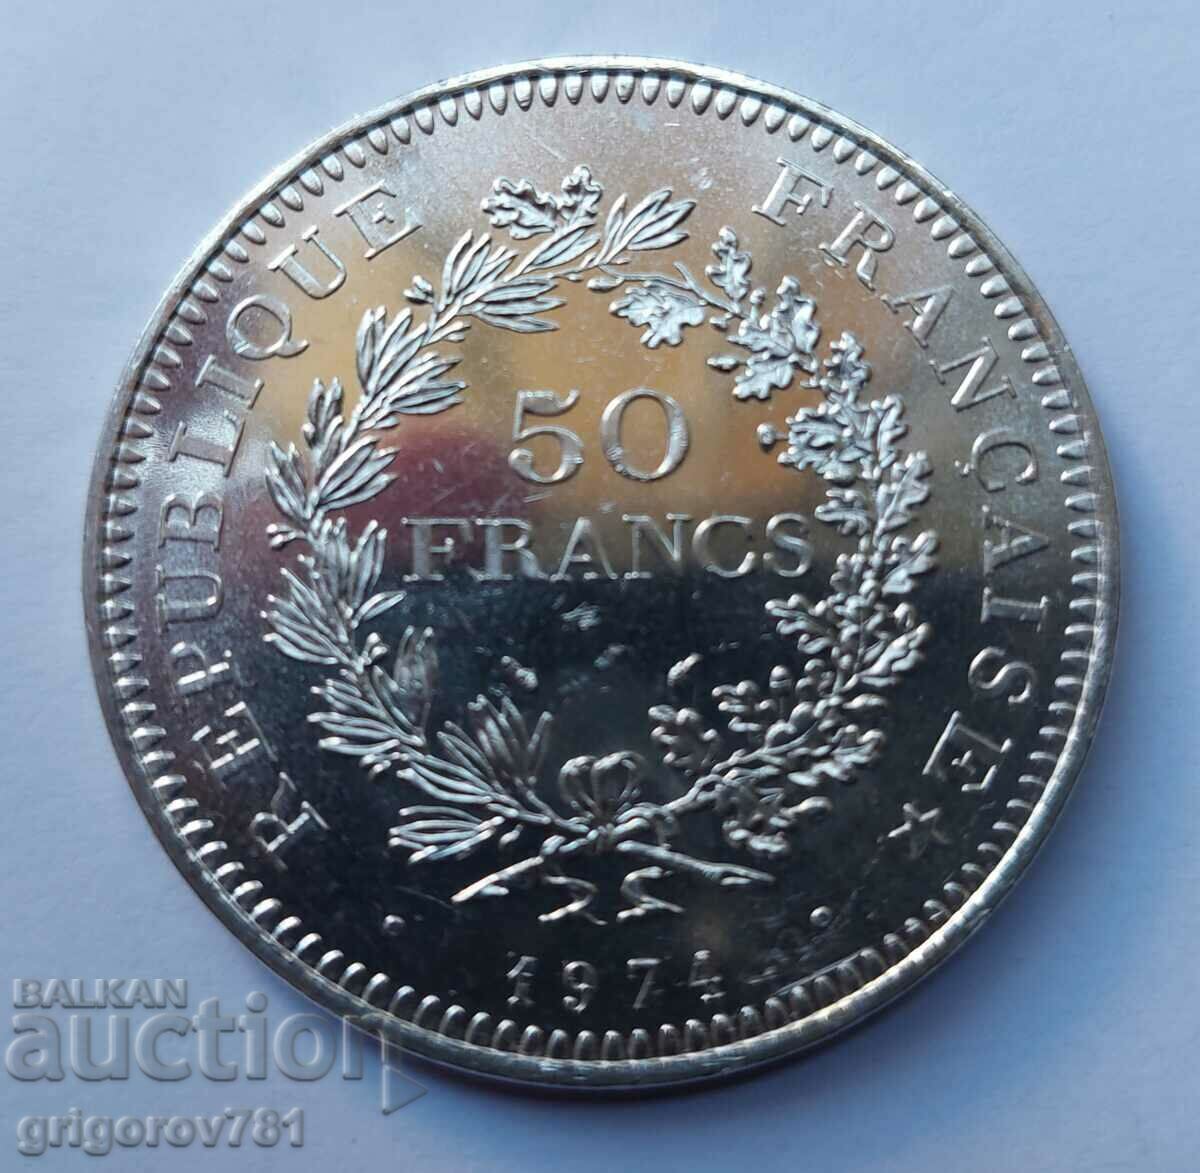 50 Franci Argint Franta 1974 - Moneda de argint #29